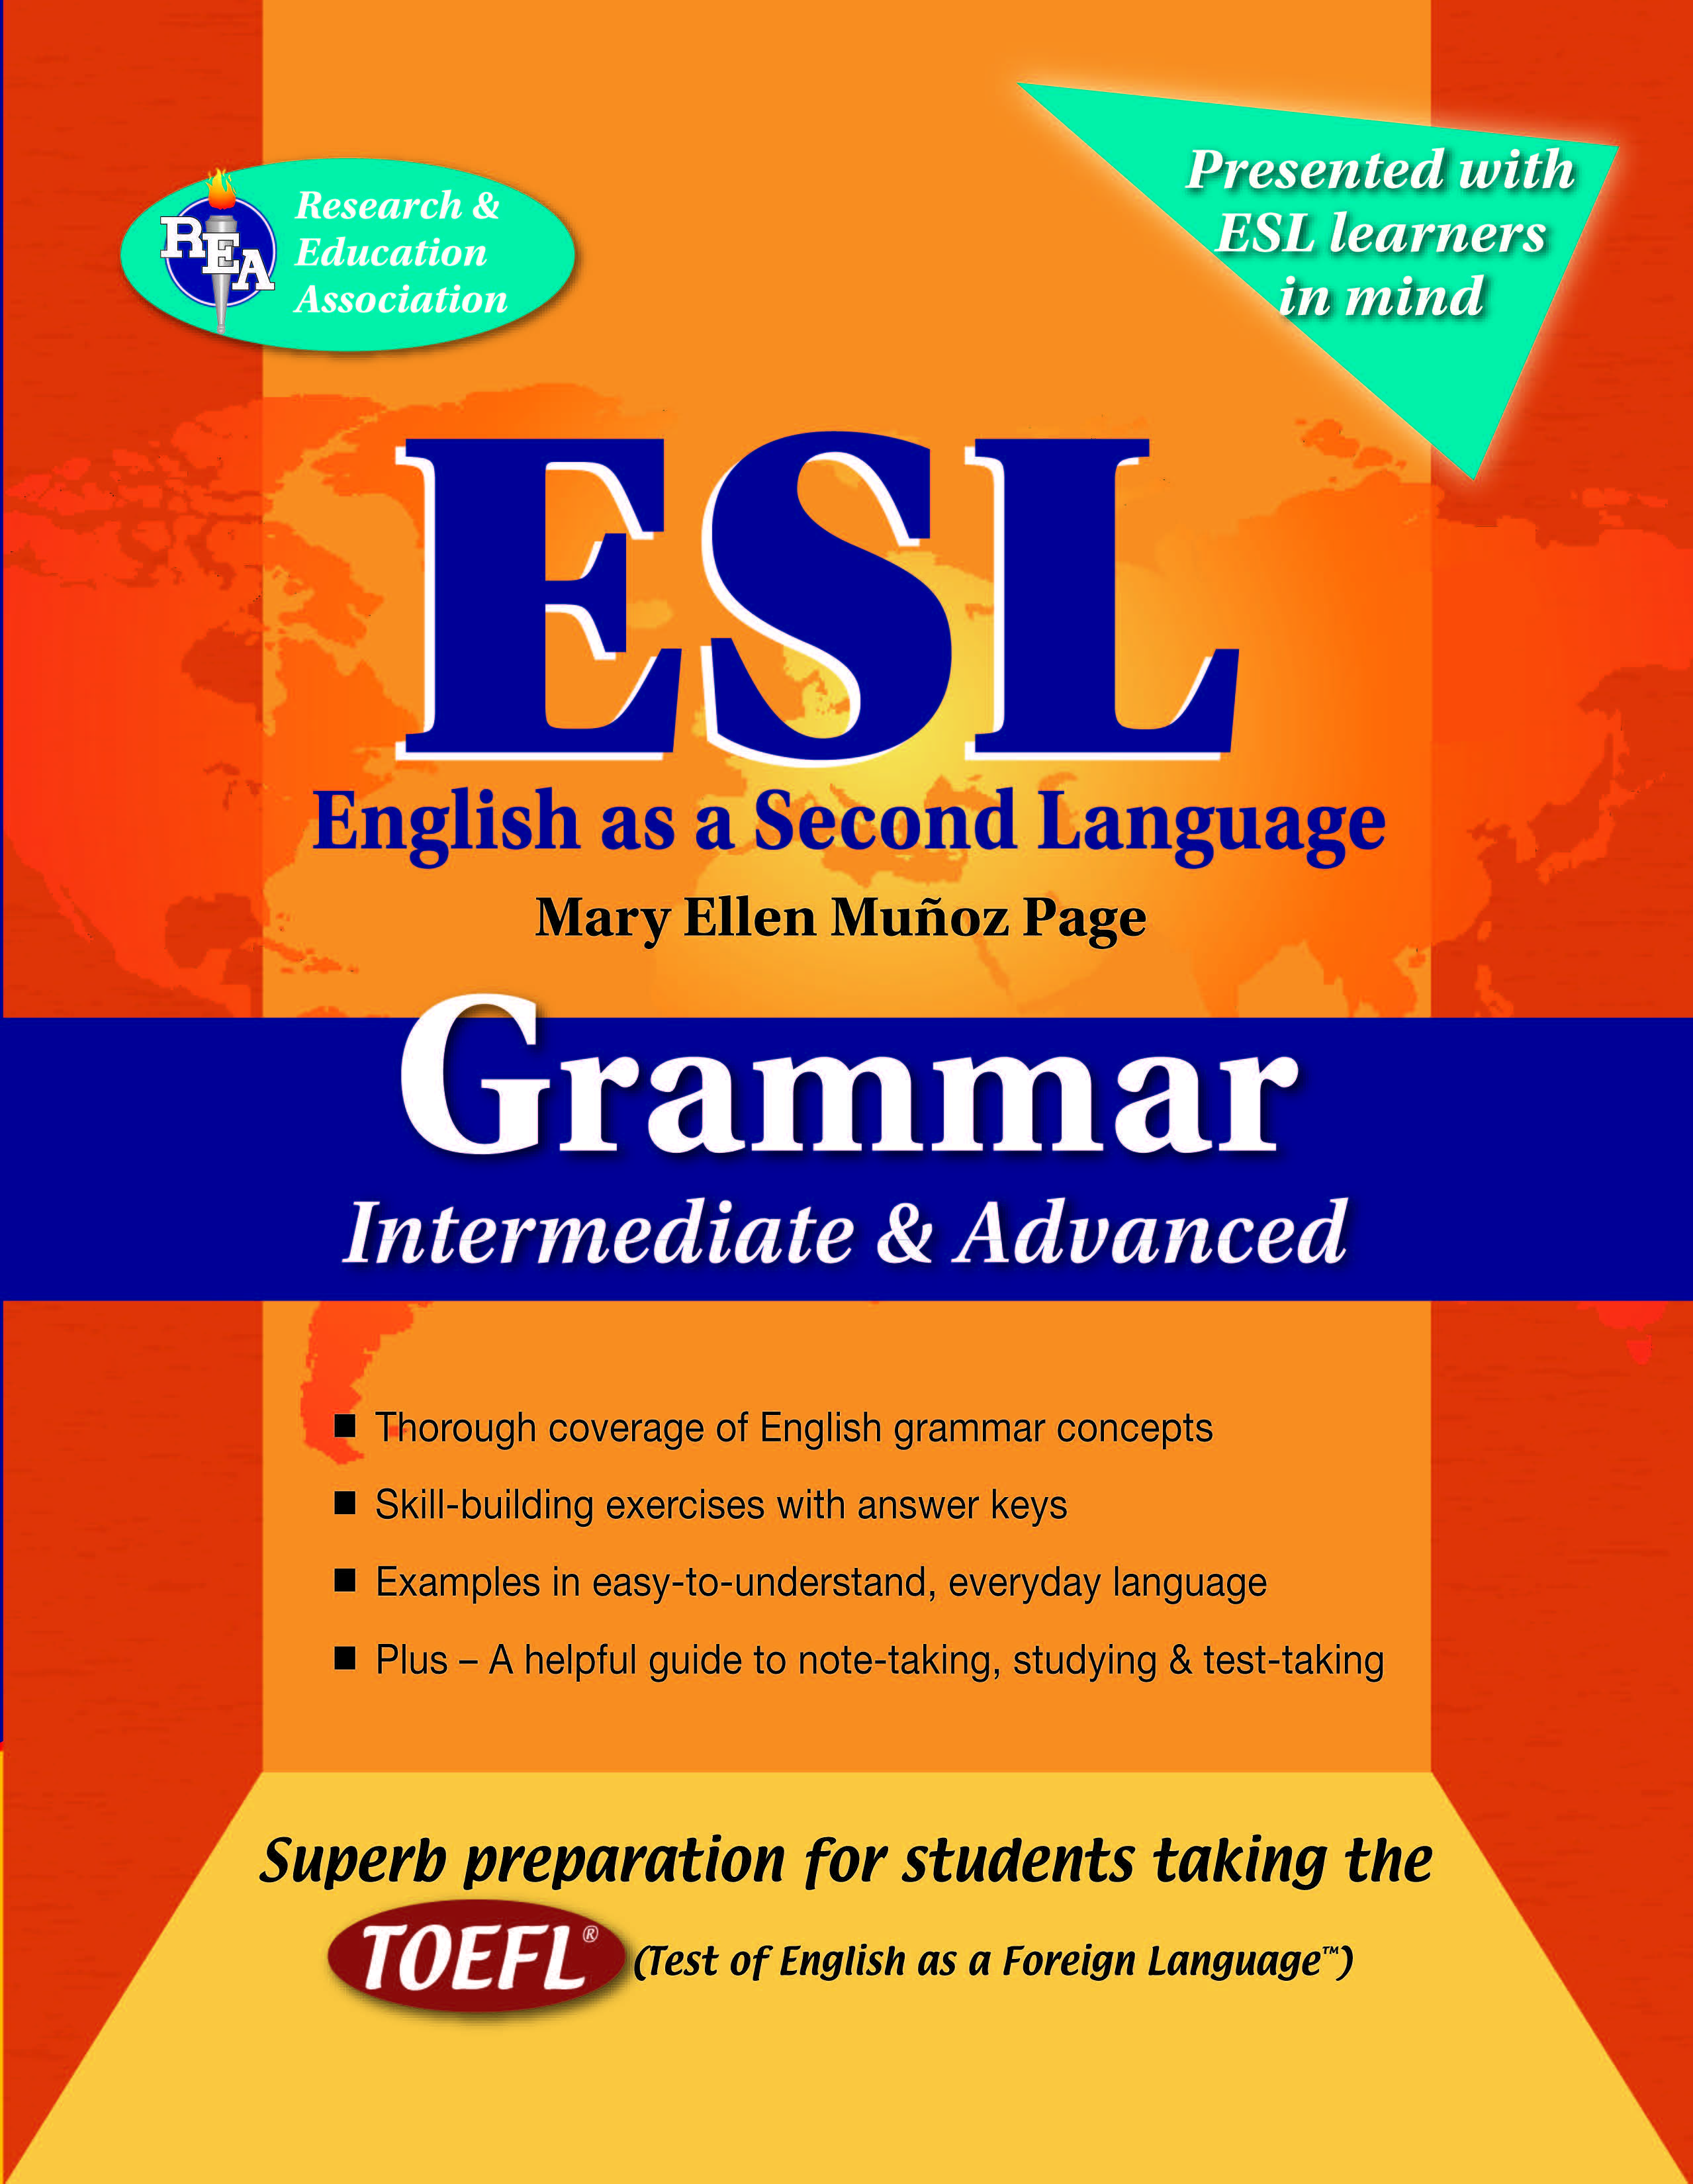 [PDF] ESL Intermediate/Advanced Grammar by Mary Ellen Munoz Page